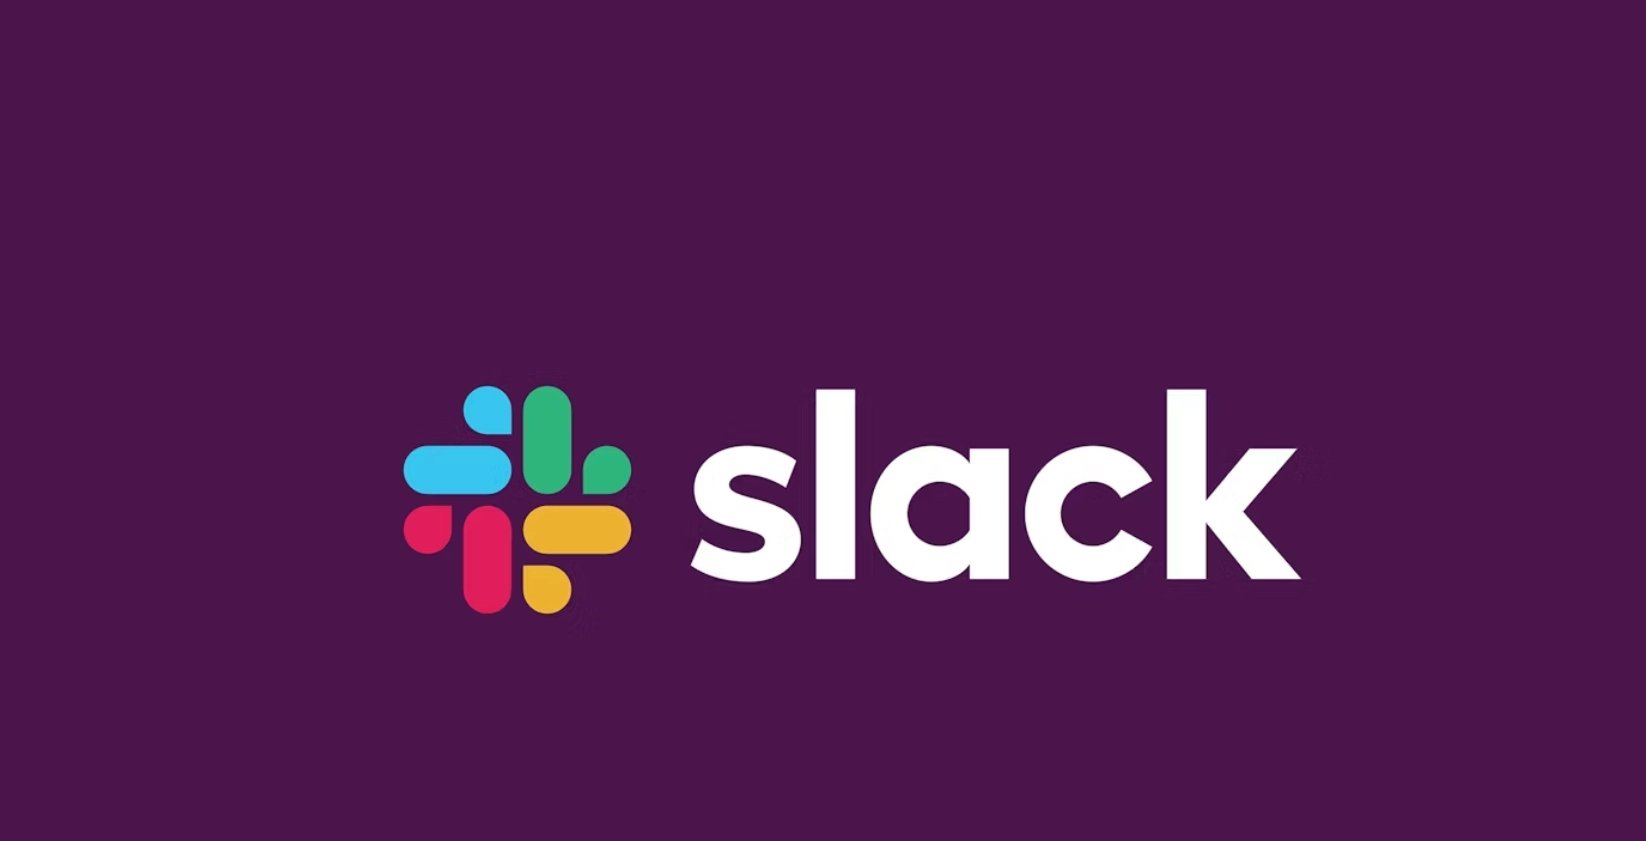 Slack припинить роботу облікових записів, які пов'язані з Росією, через нові санкції США